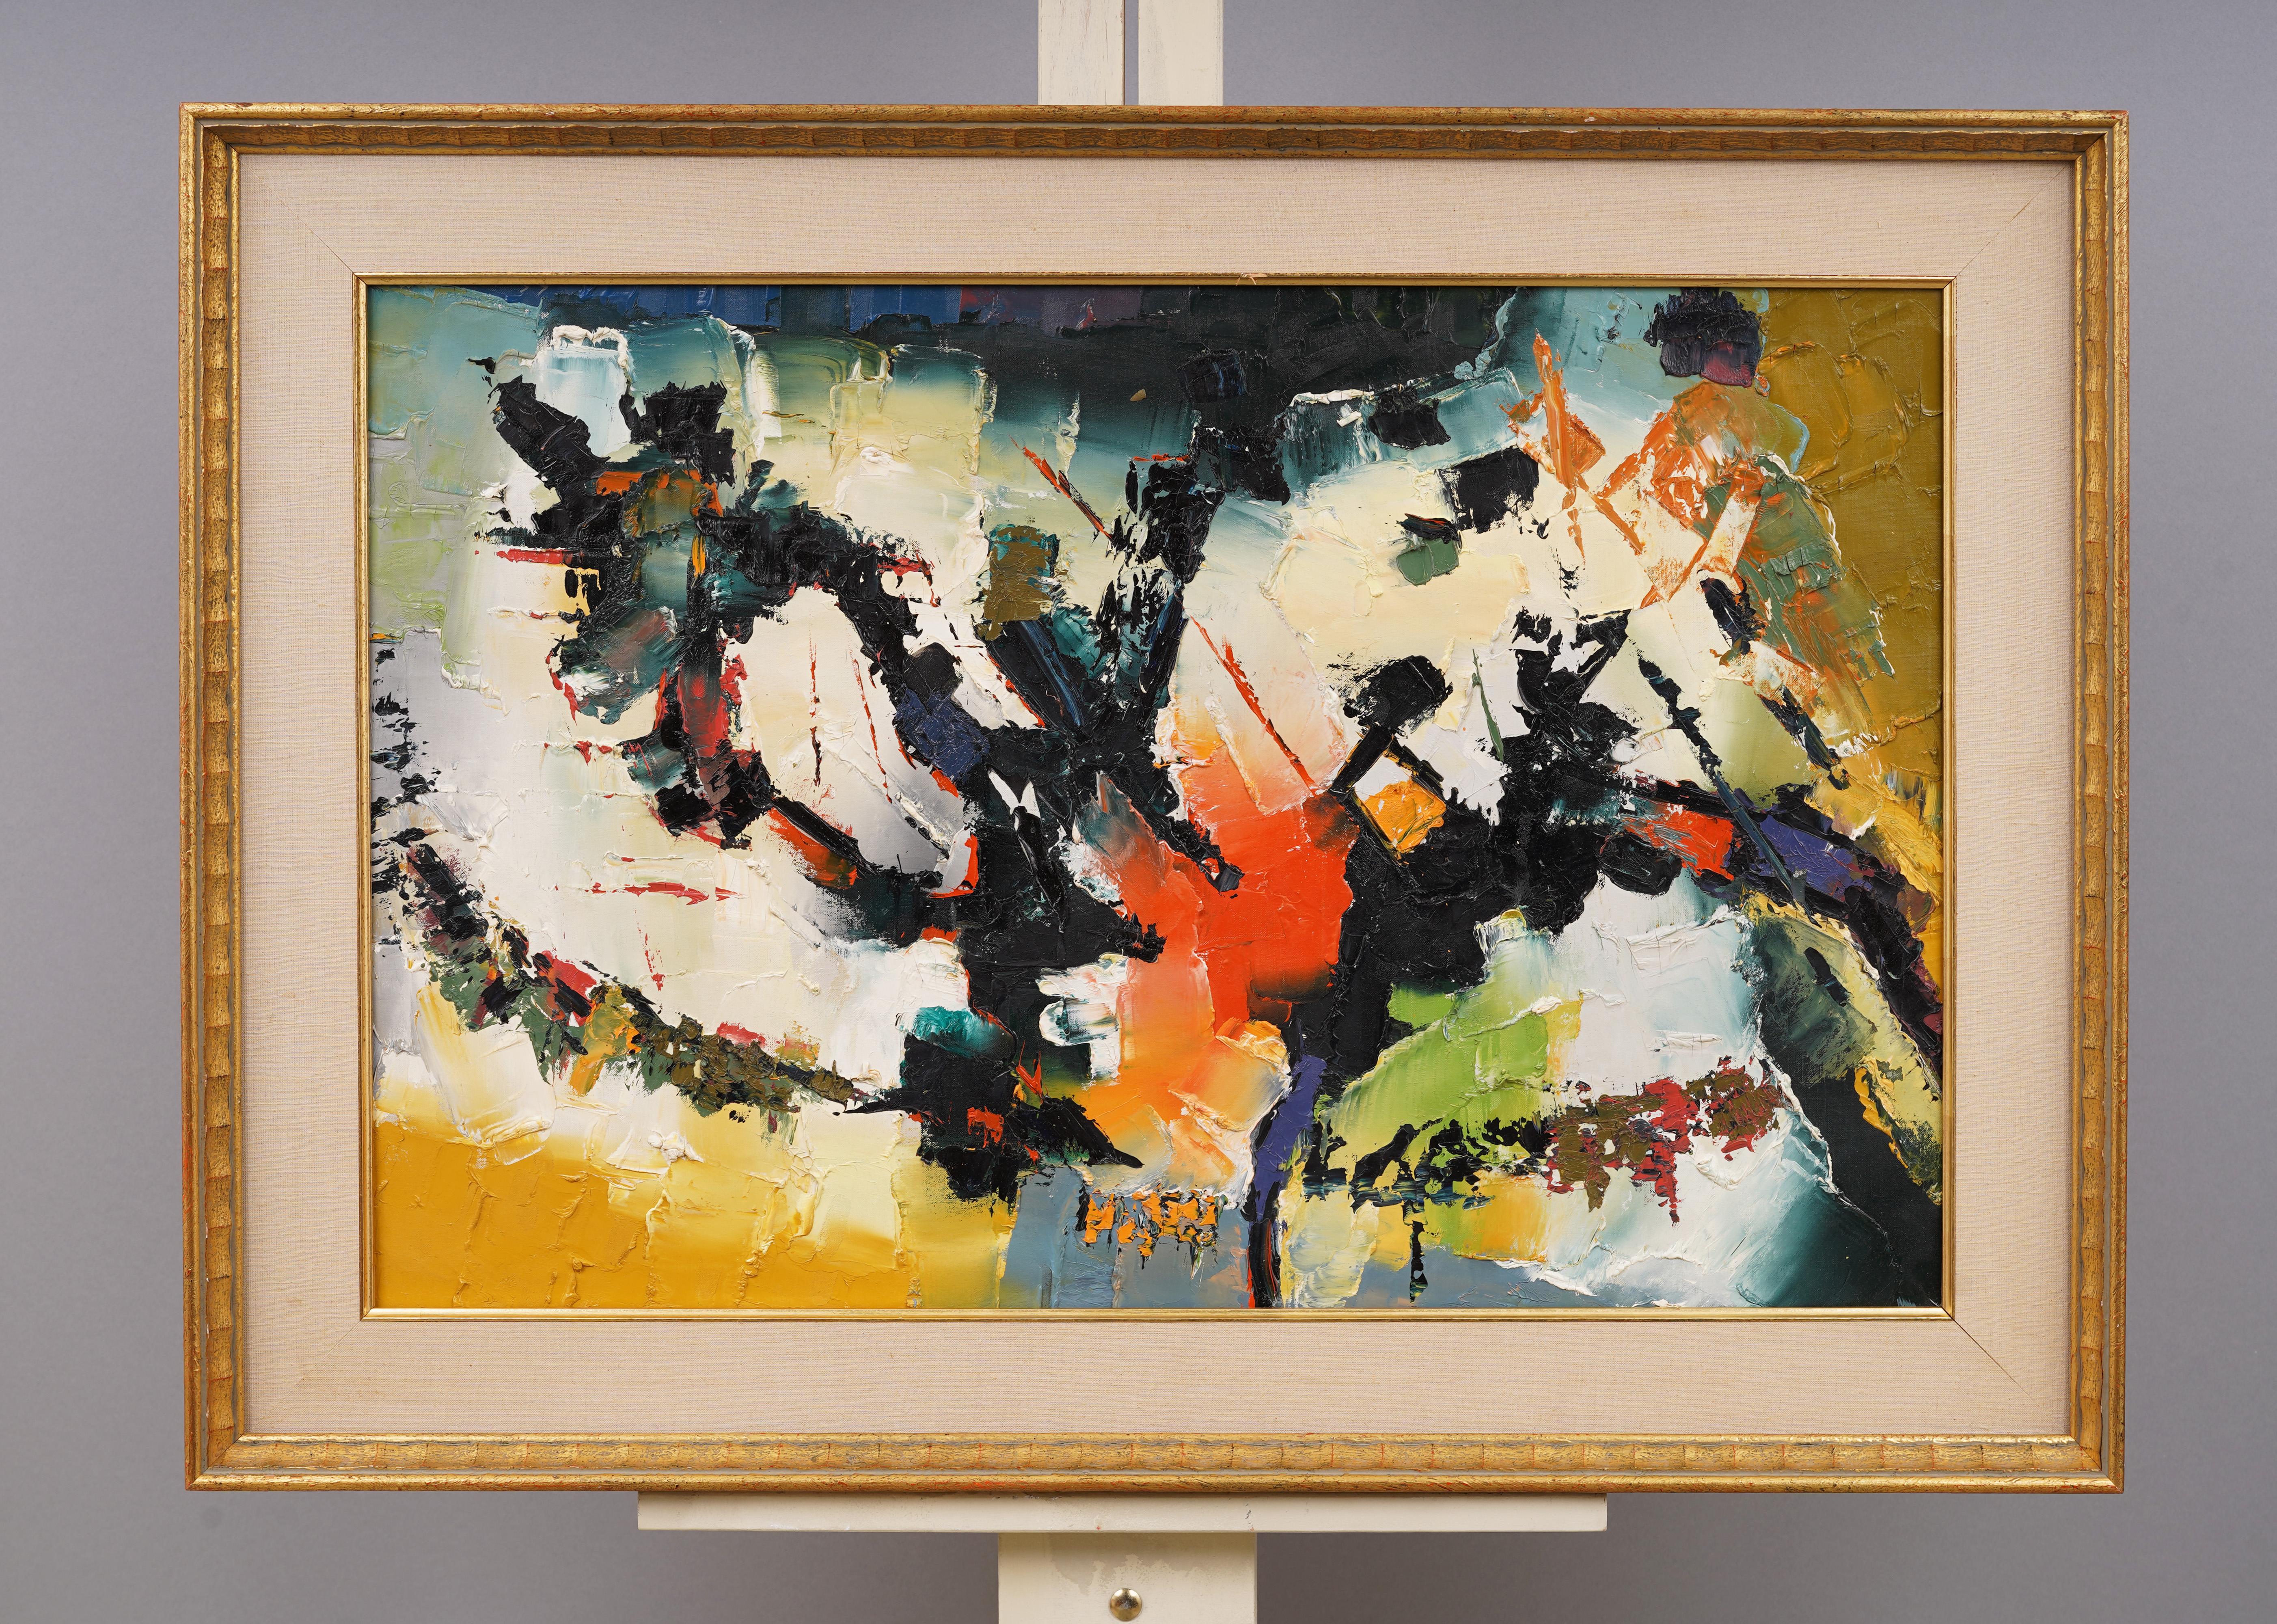 Ancienne peinture à l'huile expressionniste abstraite moderniste américaine encadrée - Painting de Unknown